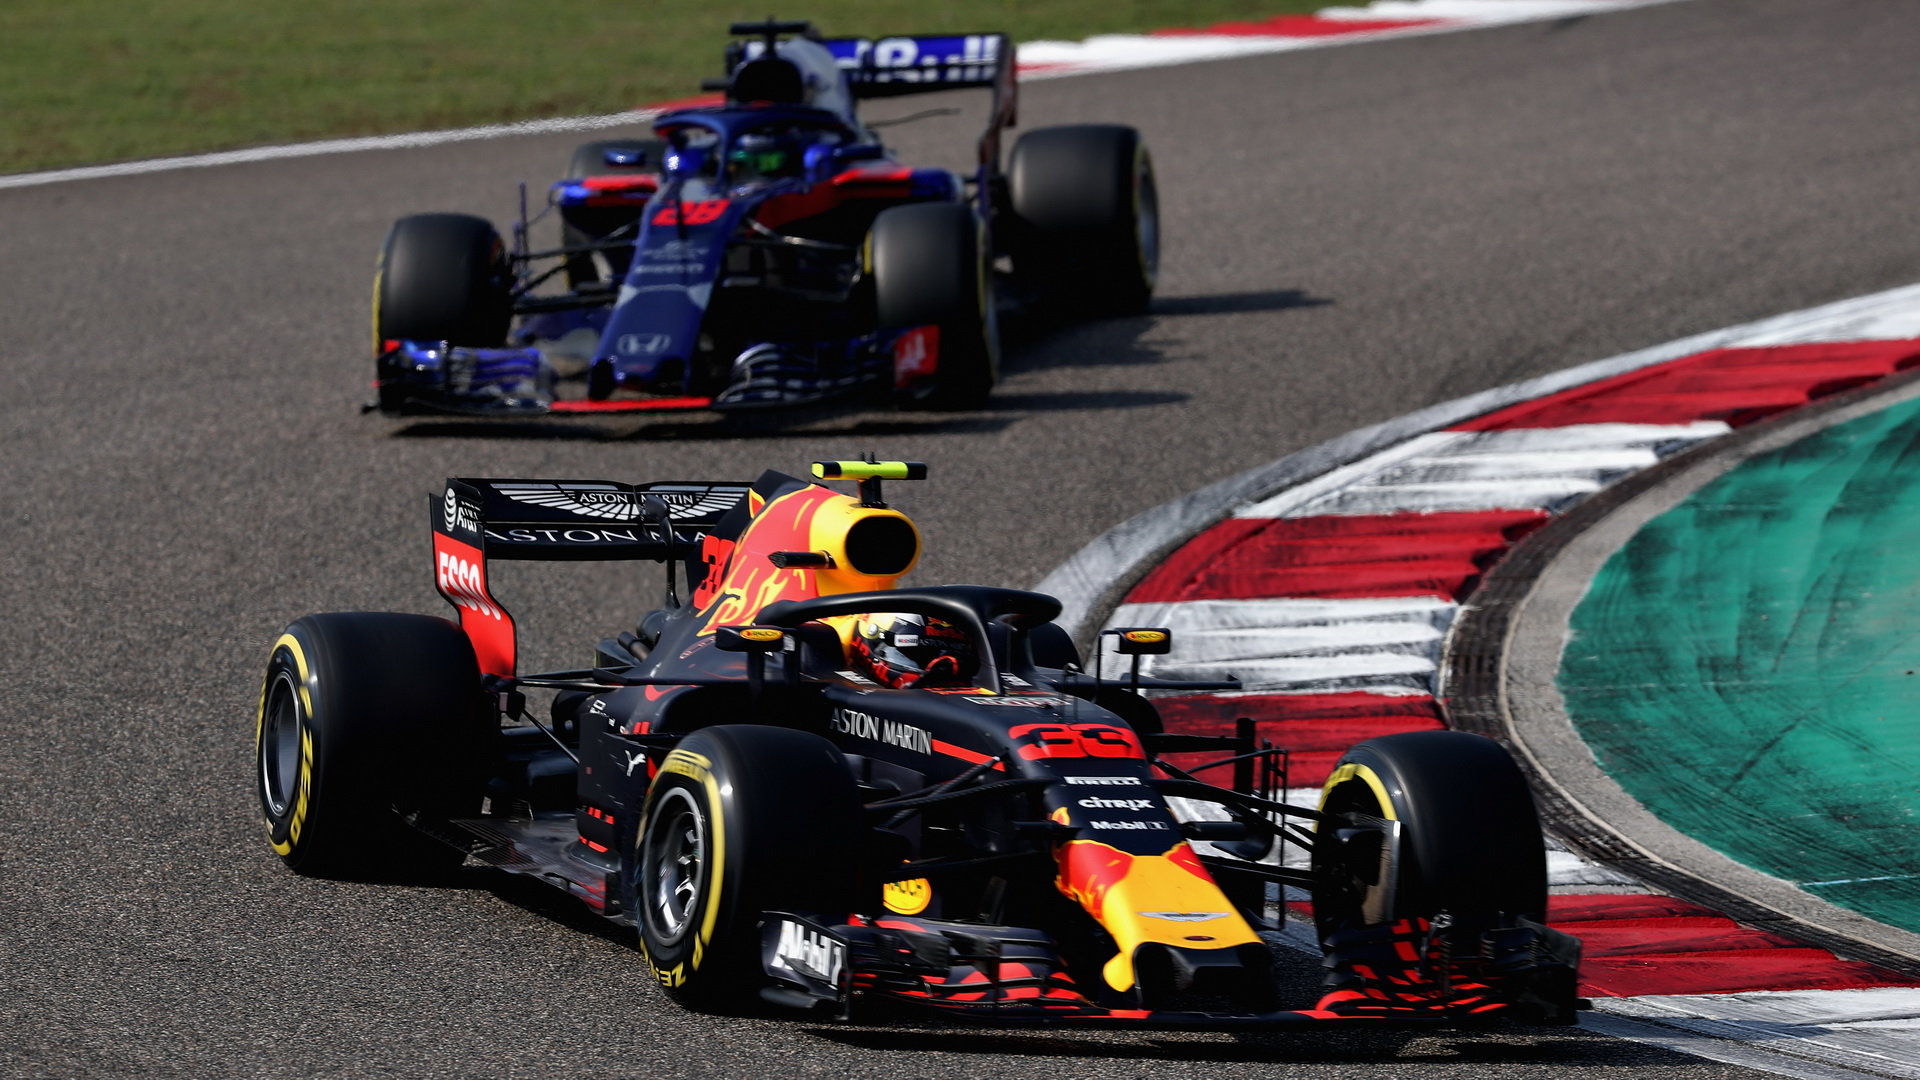 Zdá se čím dál tím více pravděpodobné, že Red Bull i Toro Rosso budou pohánět motory Honda